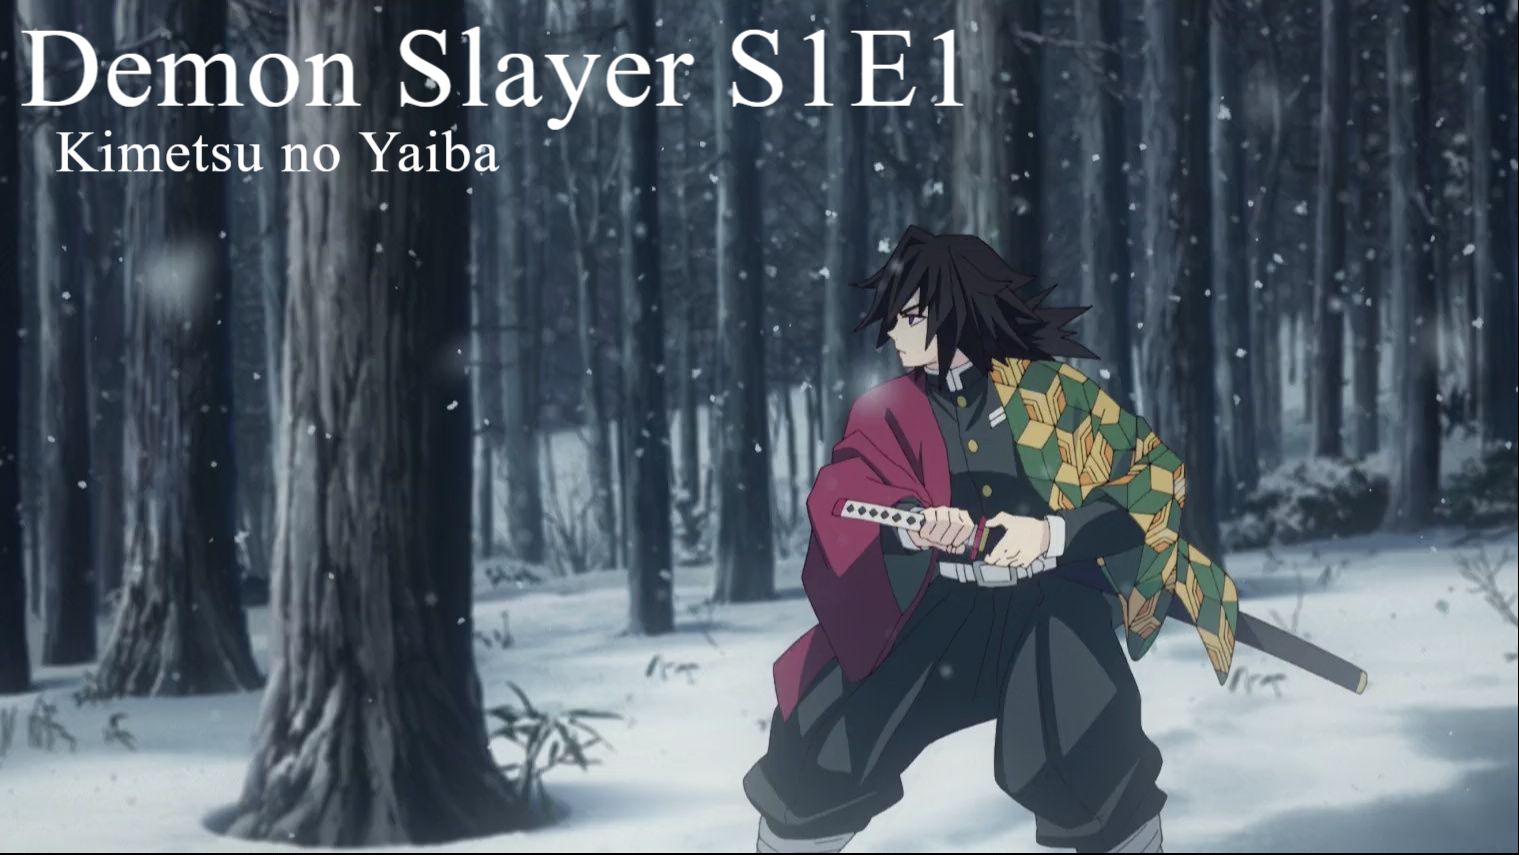 Demon Slayer: Kimetsu no Yaiba S1 EP1 - CRUELDADE PARTE FINAL #animes